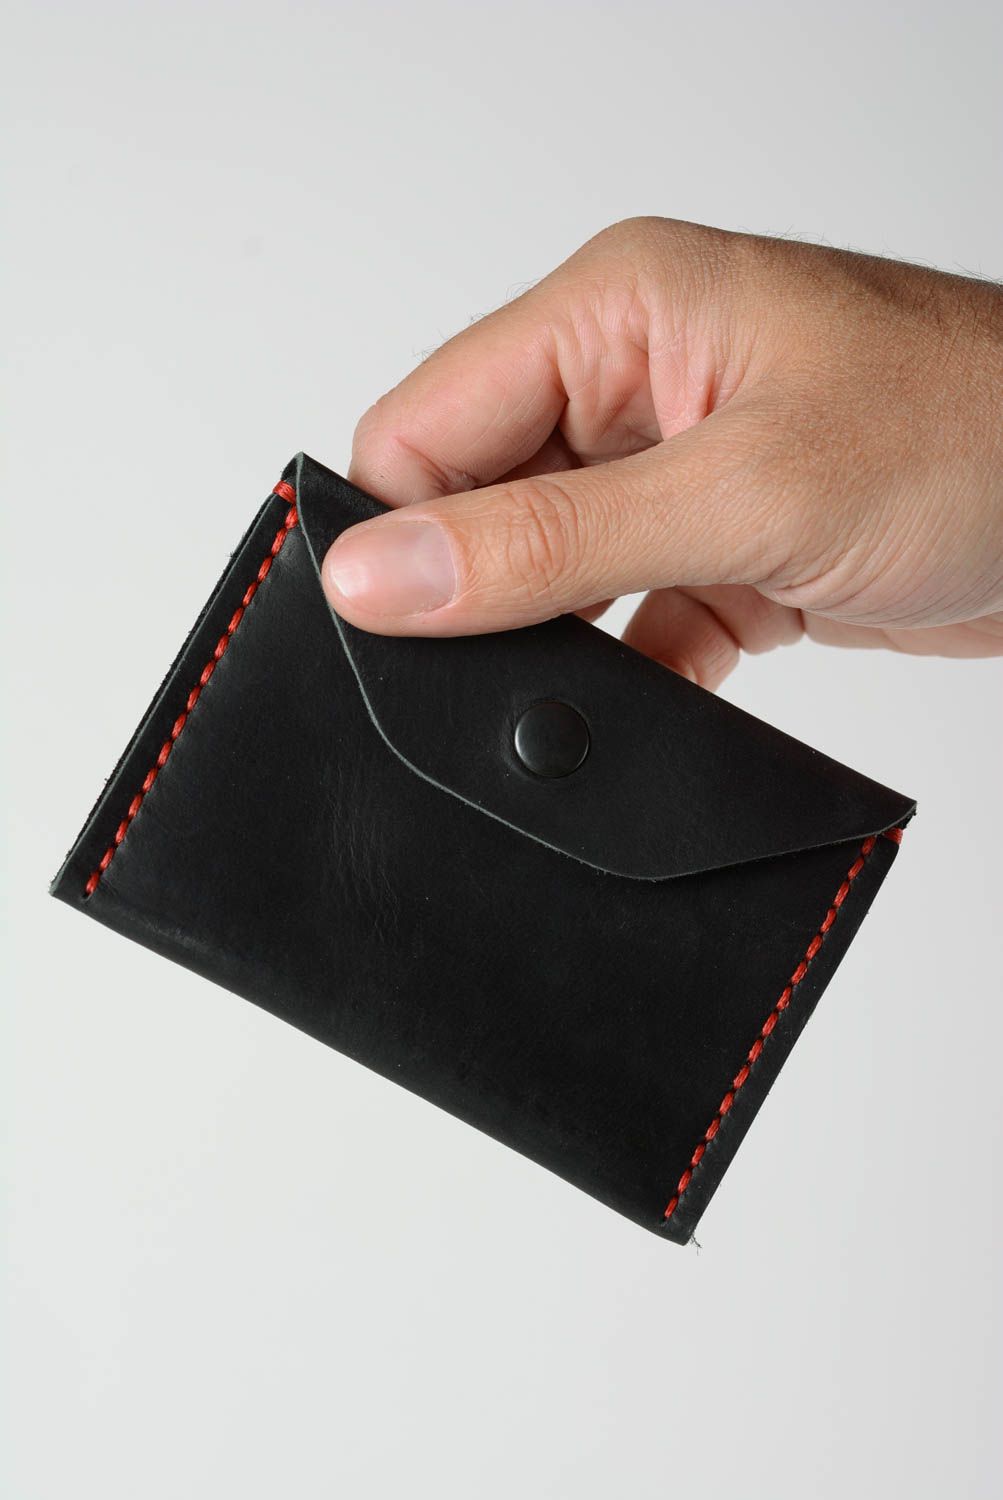 Porte-monnaie en vrai cuir fait main noir original pratique pour femme photo 2